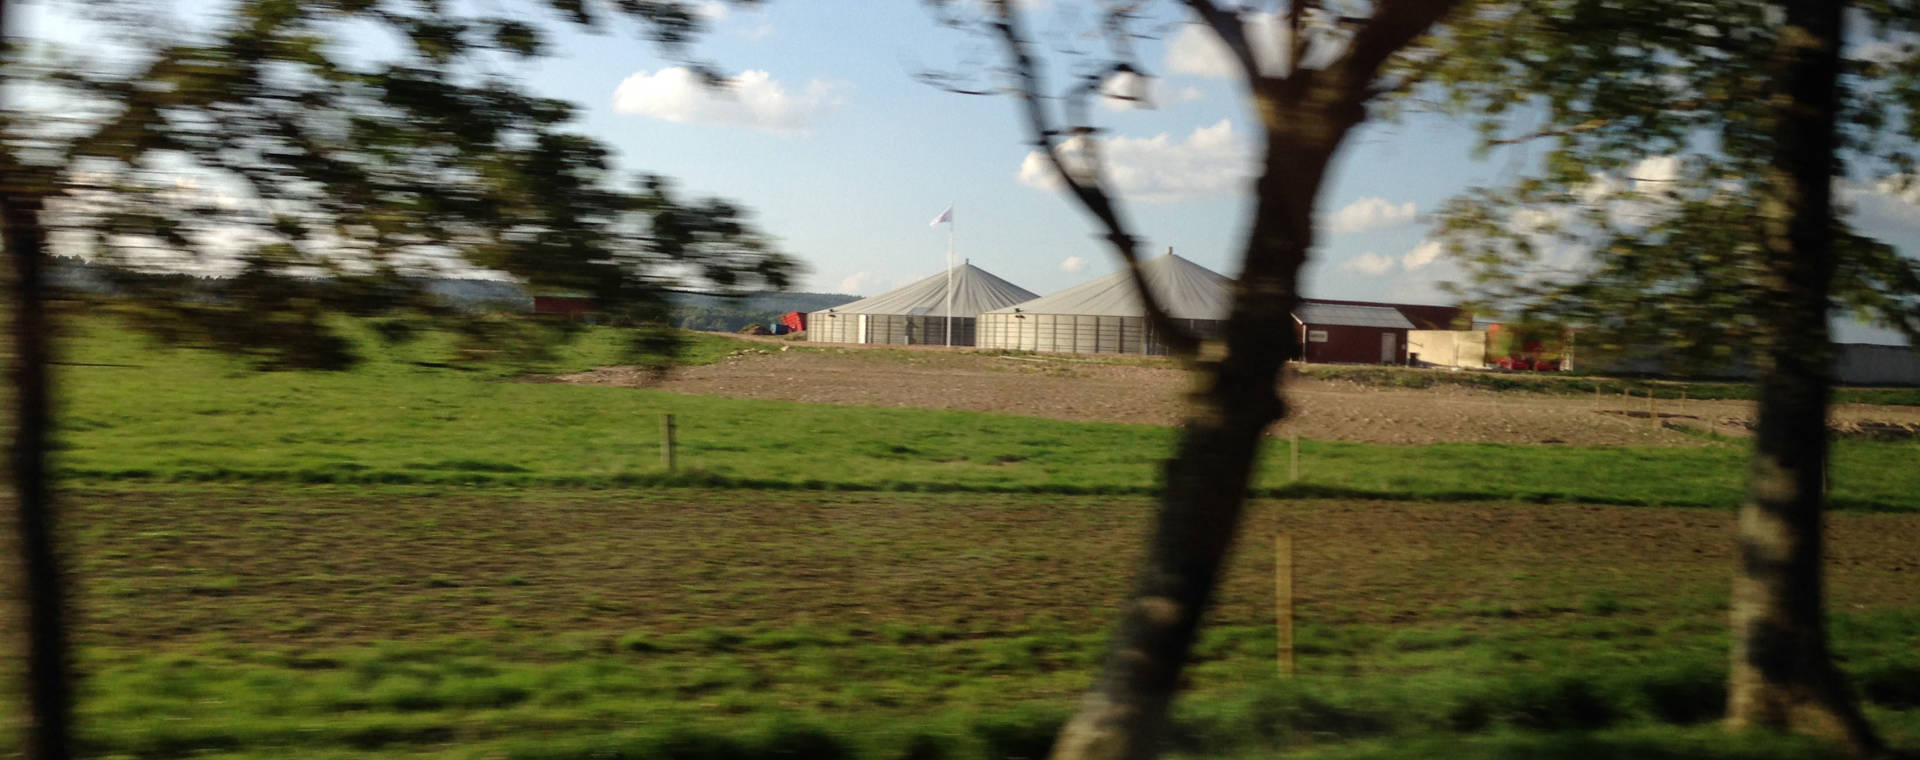 Bild på produktionsanläggning för biogas.